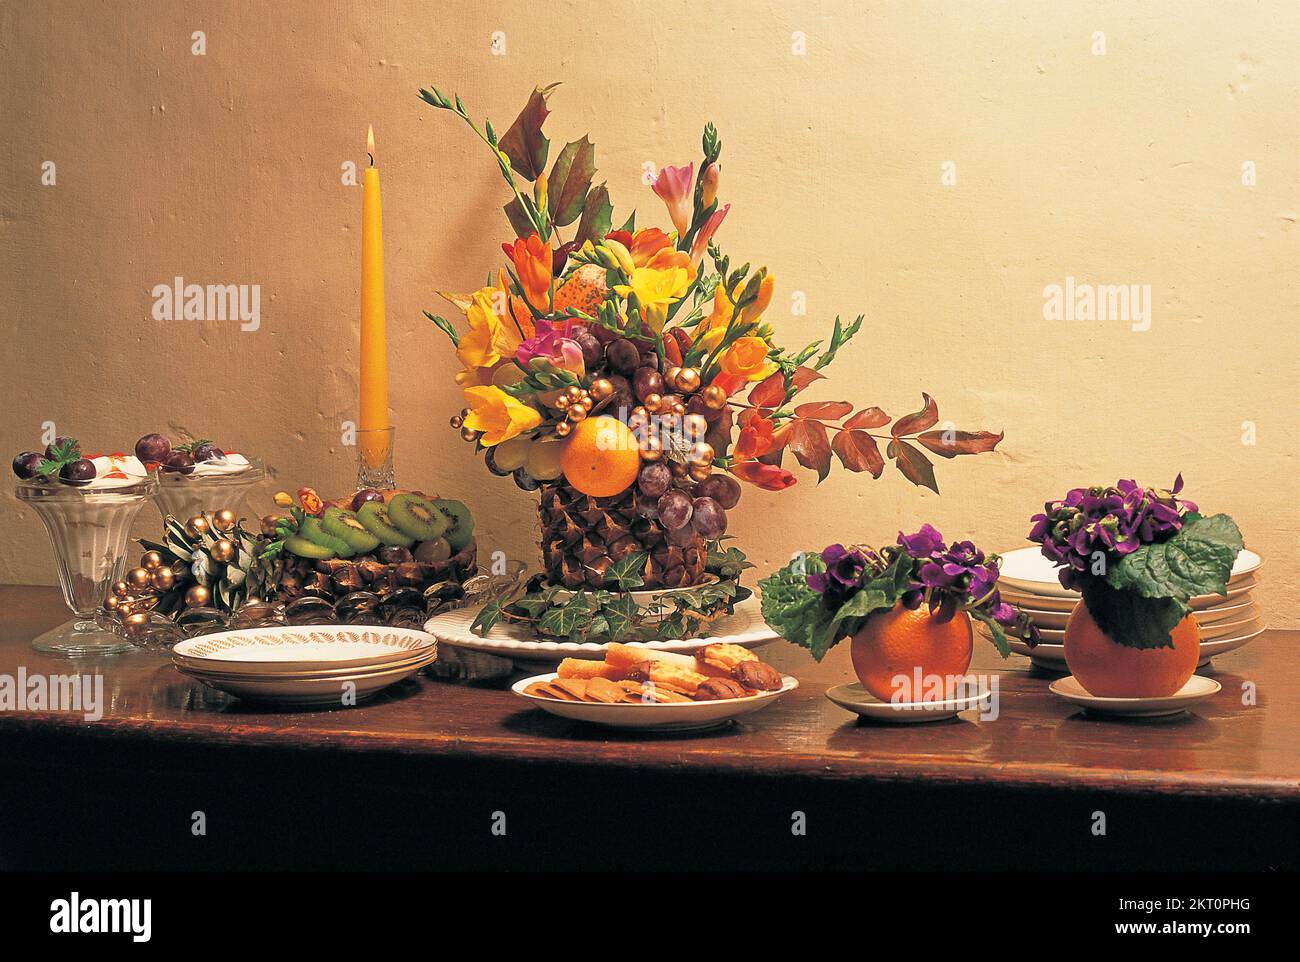 Stylish arrangement of fruit, foliage and flowers on table Stock Photo